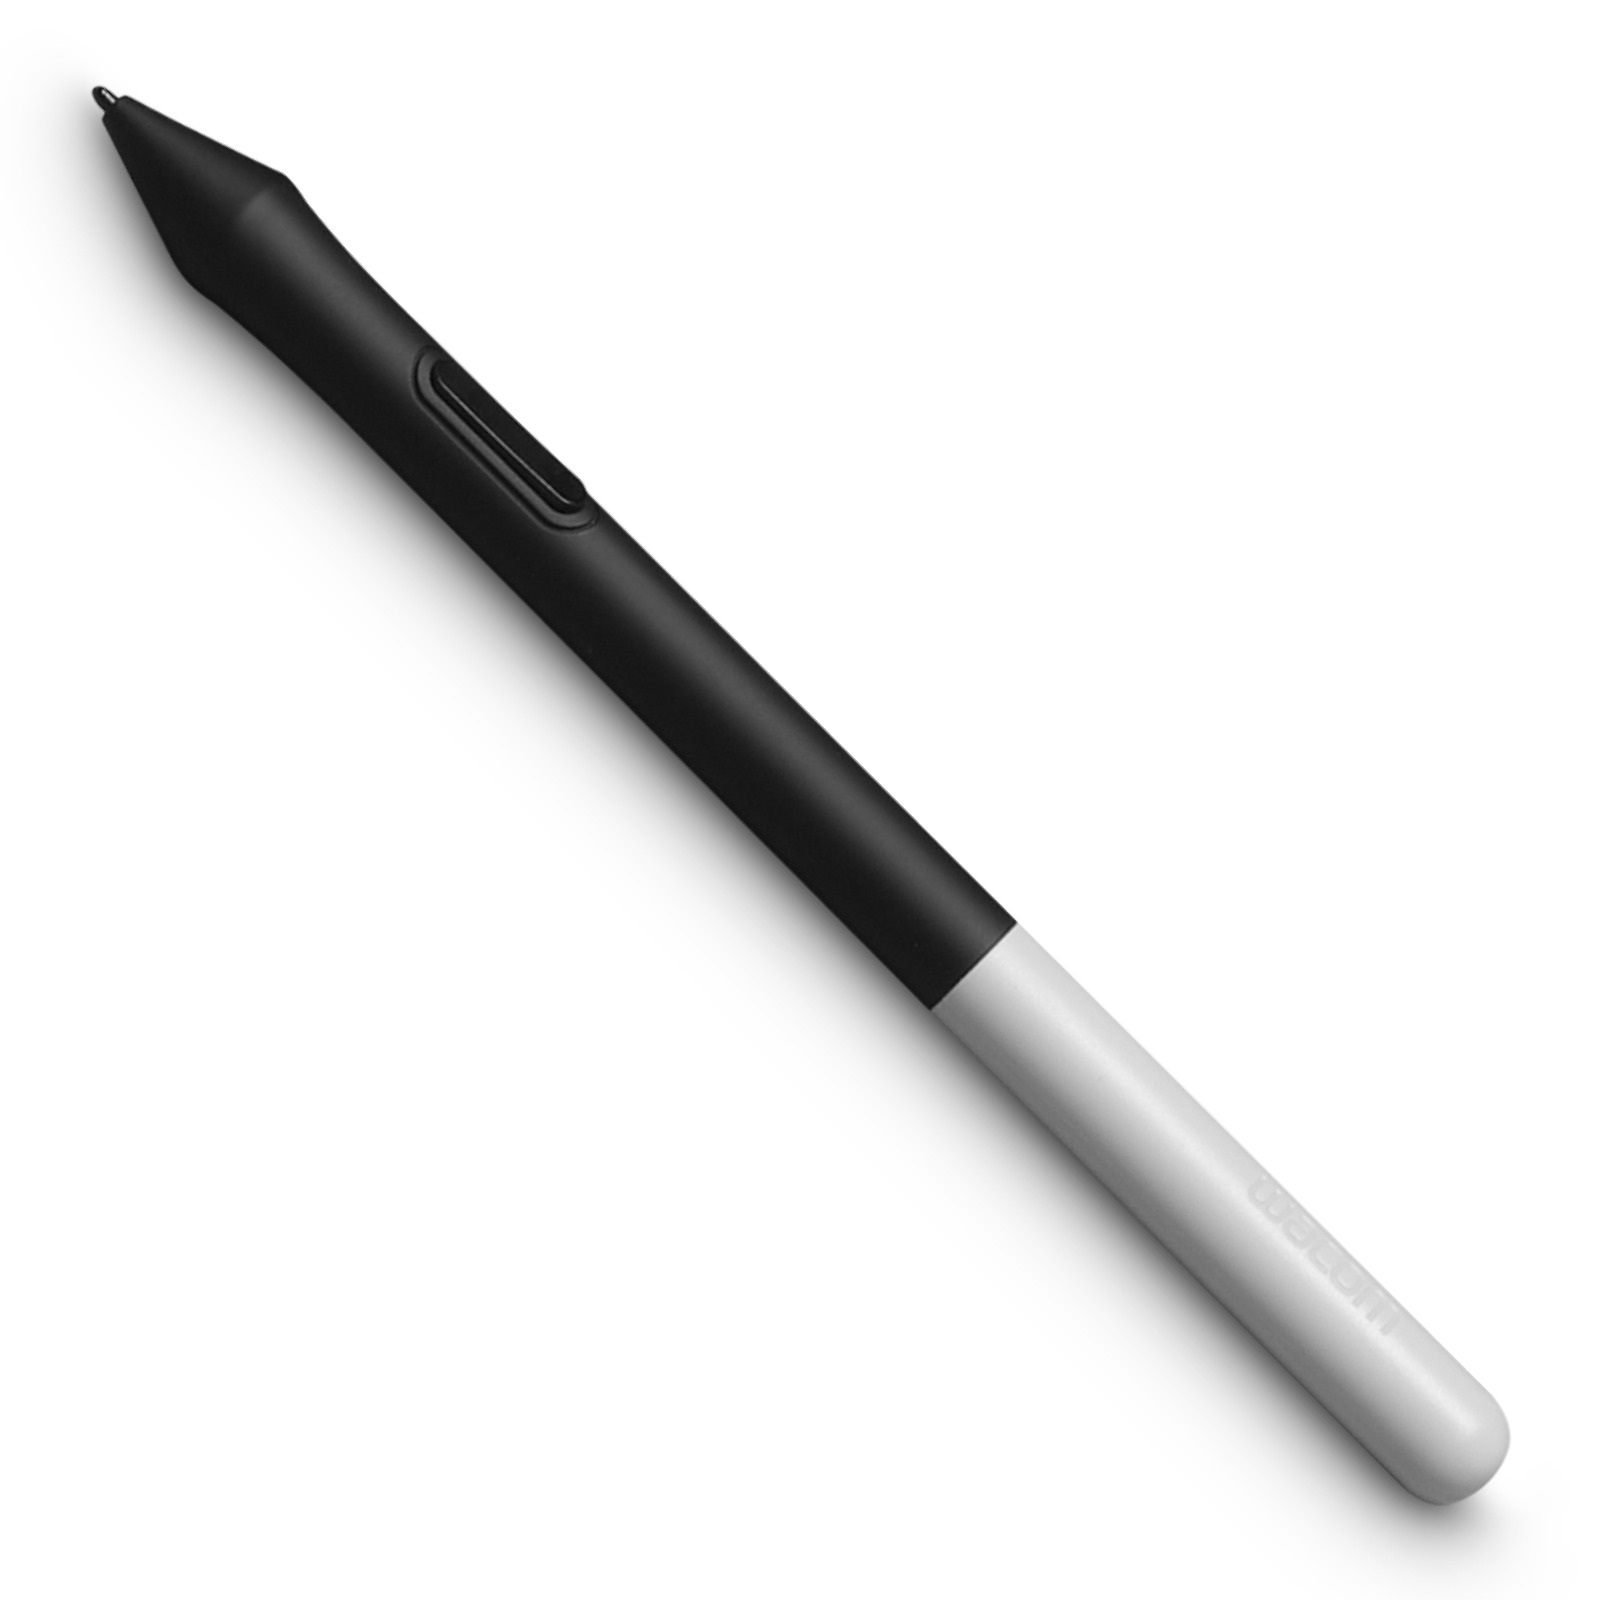 Wacom One Pen, New